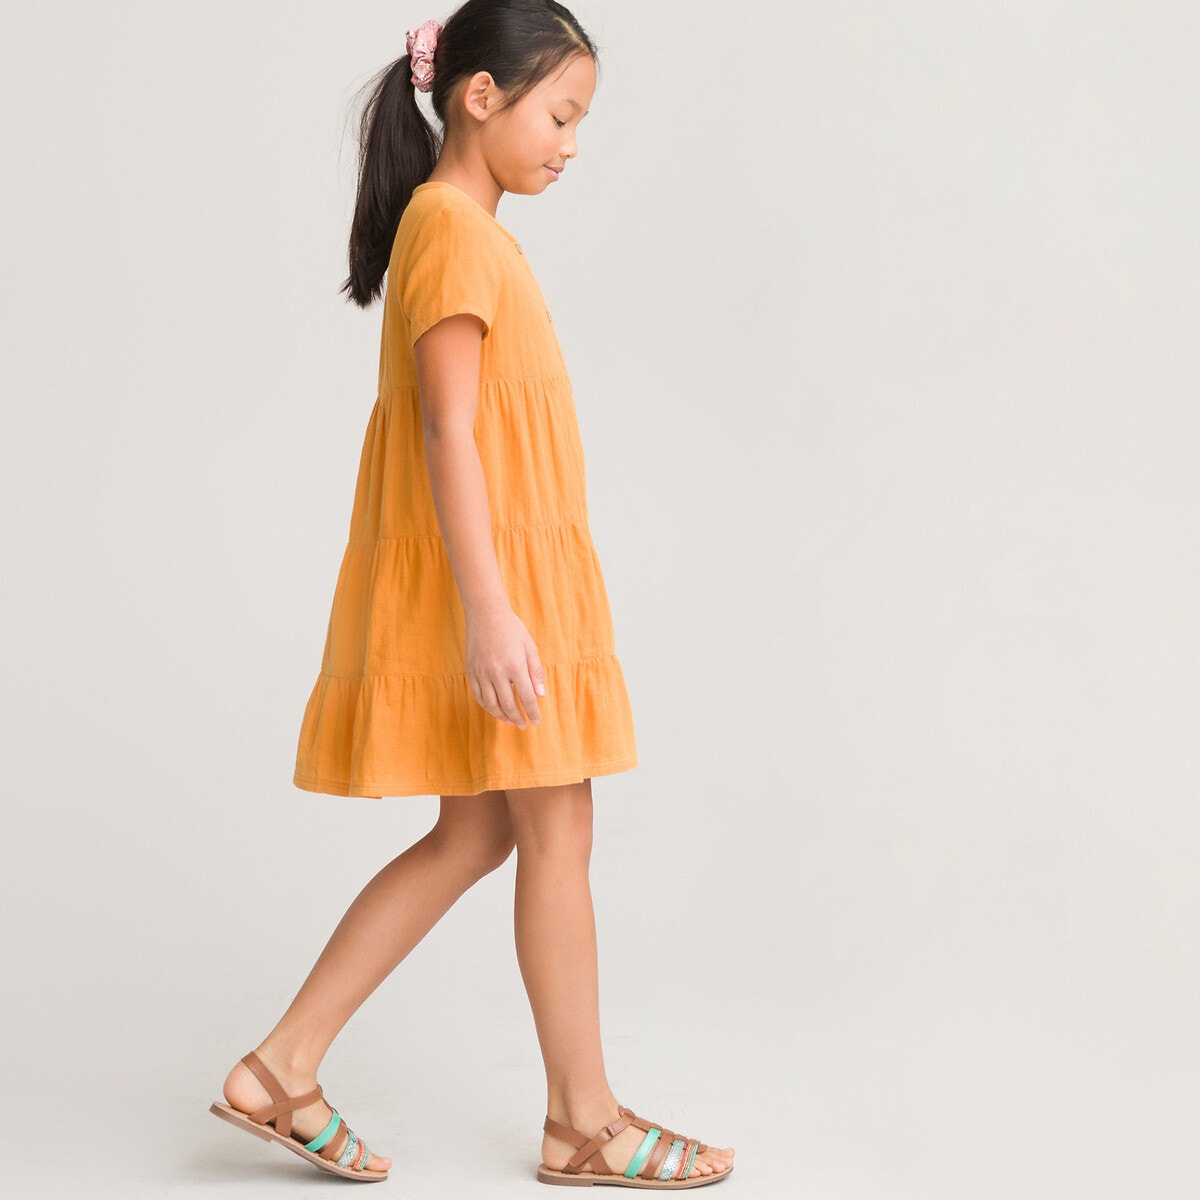 Κοντομάνικο φόρεμα από βαμβακερή γάζα, 3-12 ετών